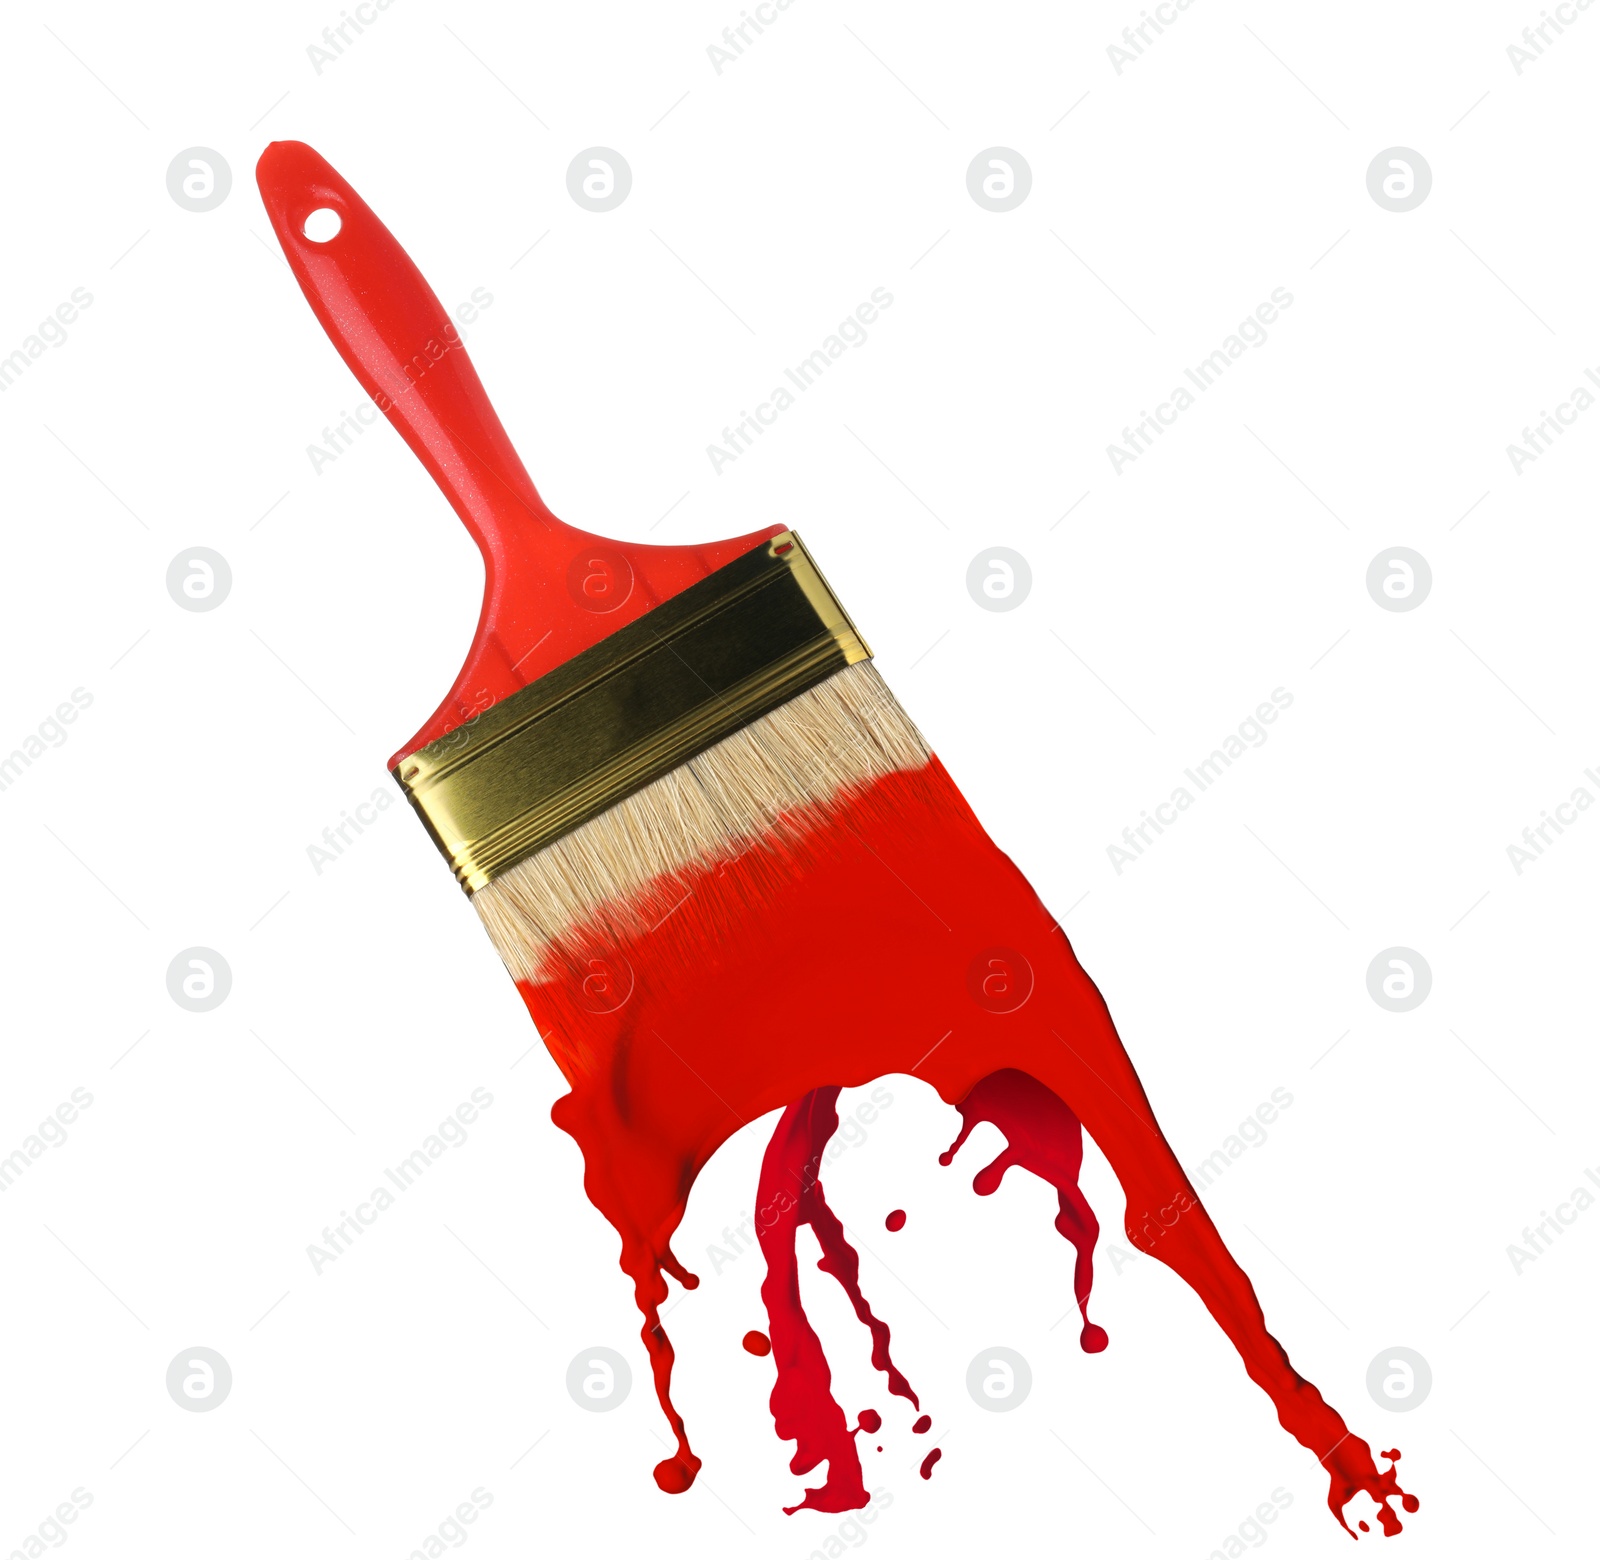 Image of Brush and splashing red paint on white background